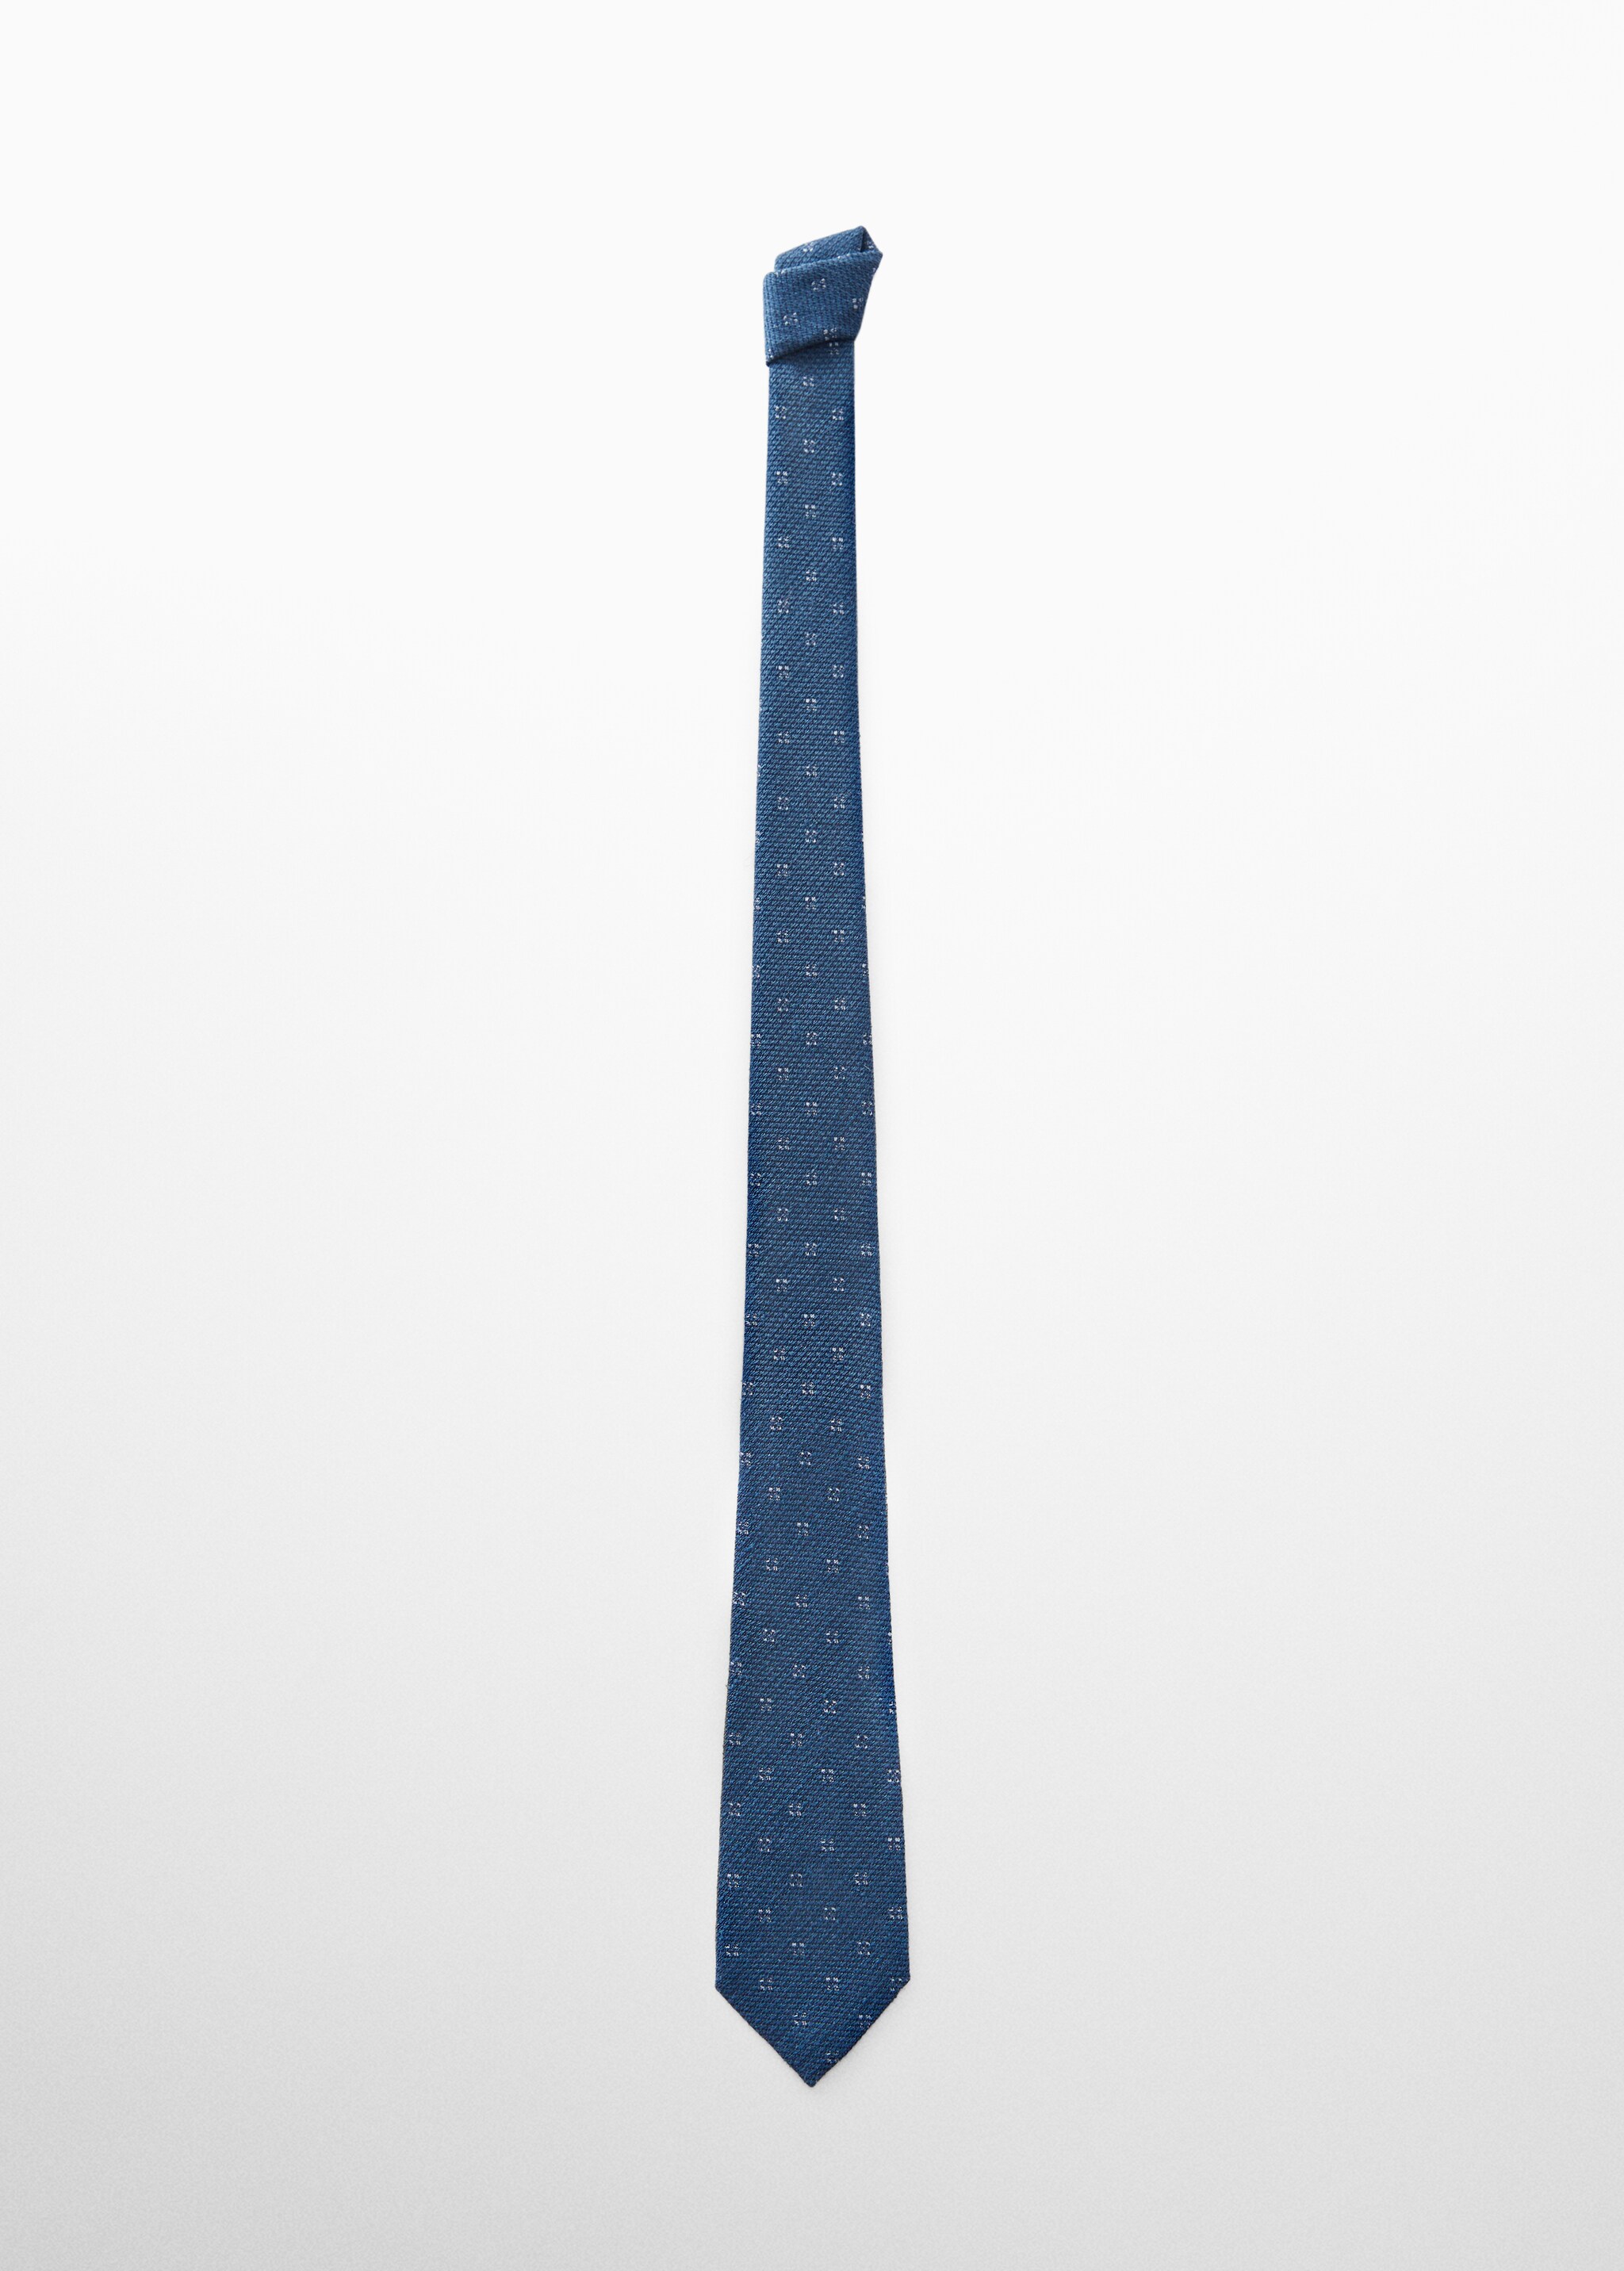 Cravatta 100% seta di gelso texture - Articolo senza modello